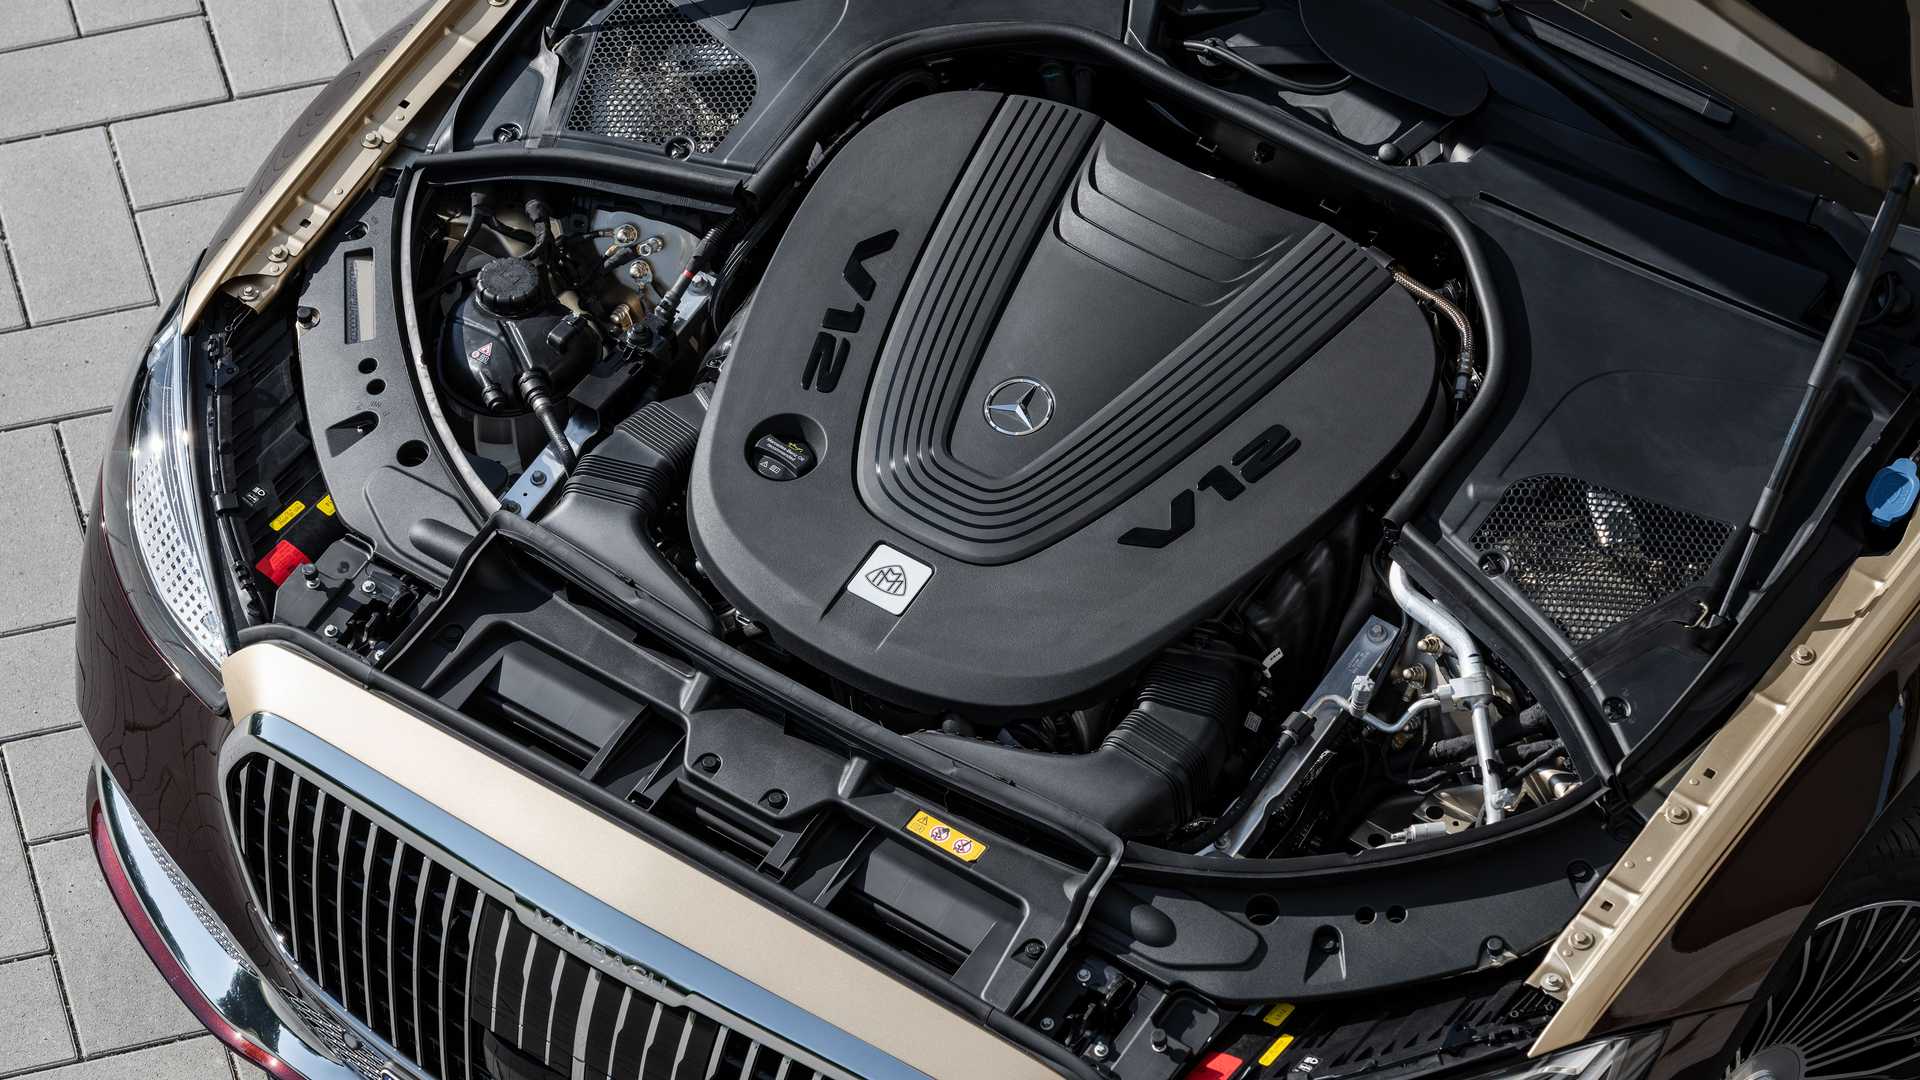 v12发动机 四驱 全新迈巴赫s680发布 低调奢华